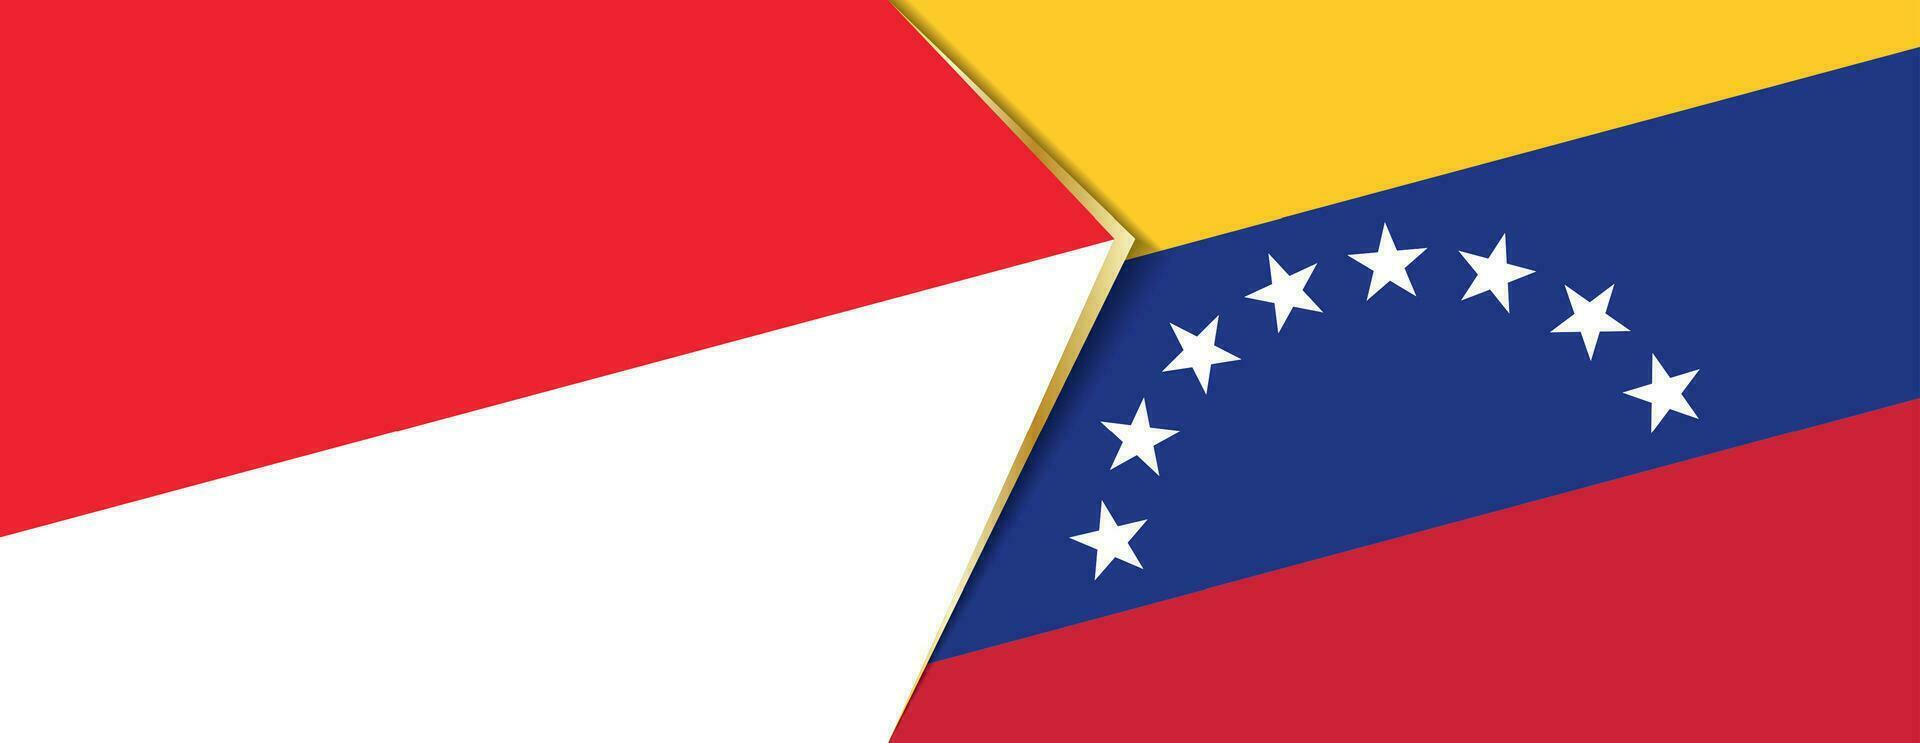 Indonesië en Venezuela vlaggen, twee vector vlaggen.